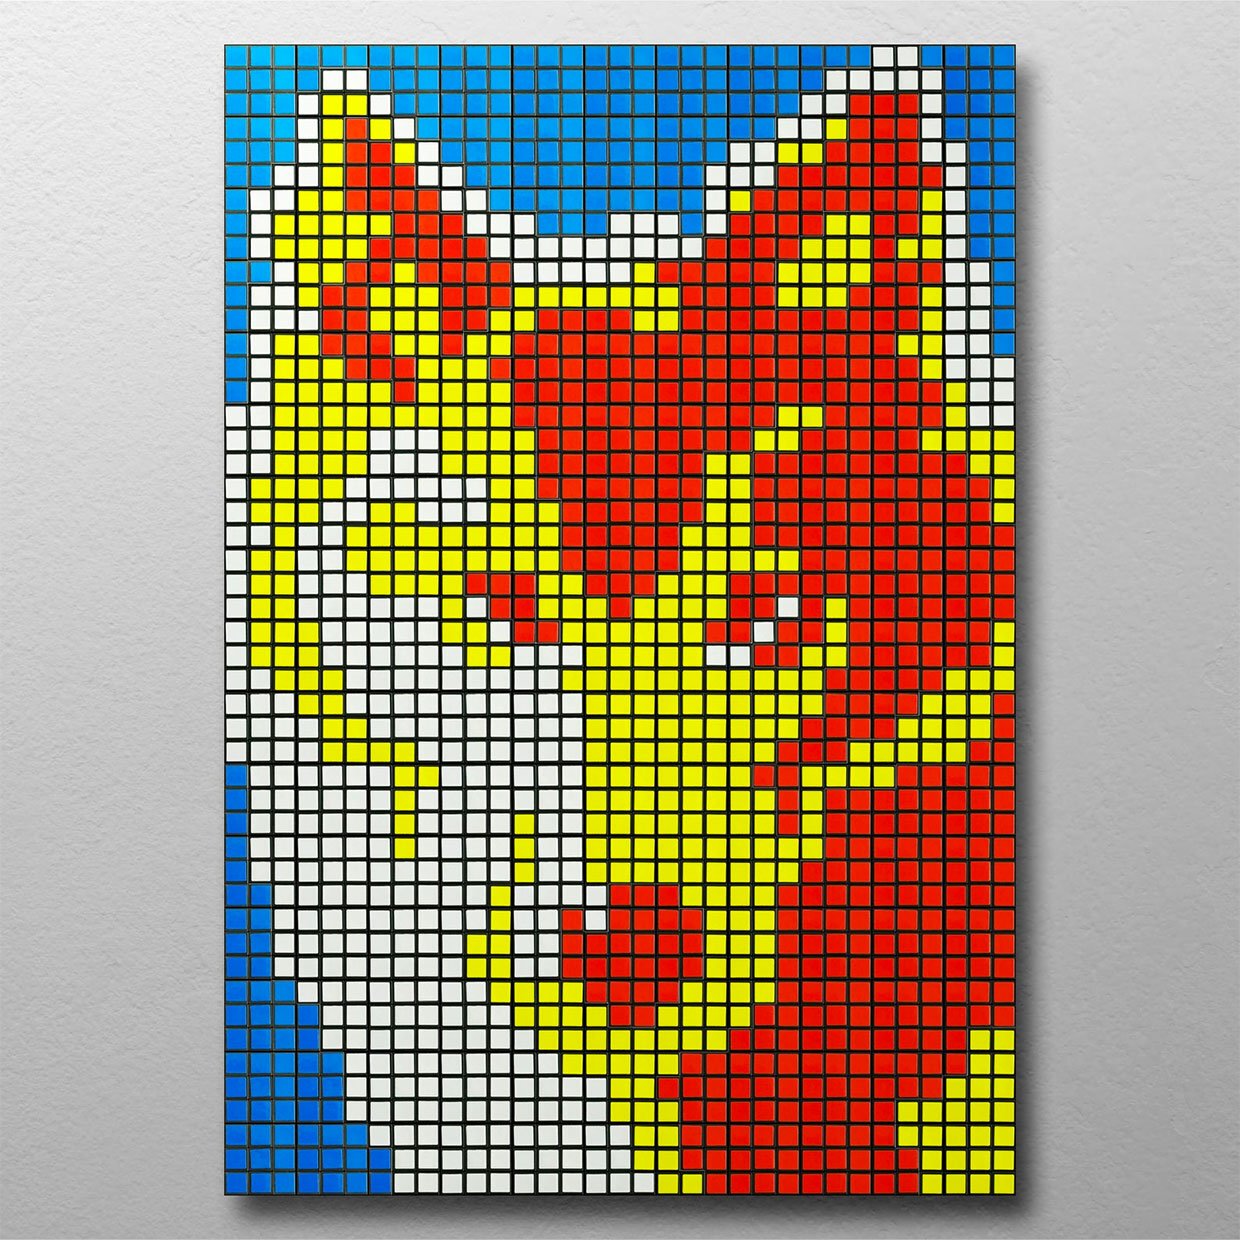 Rubik’s Cube Mosaic Kits